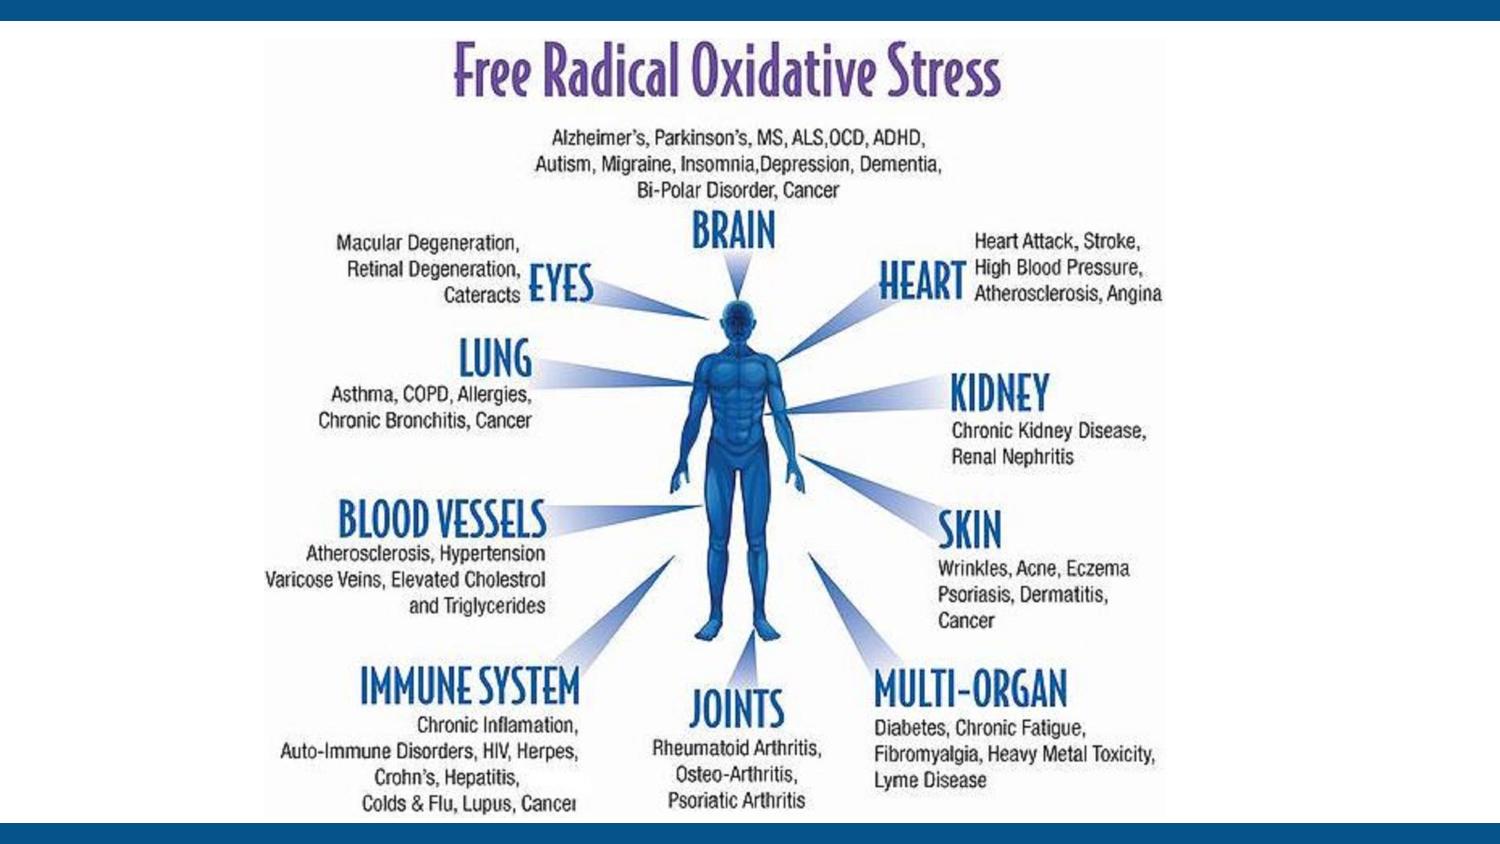 Oxidatative Stress page 3